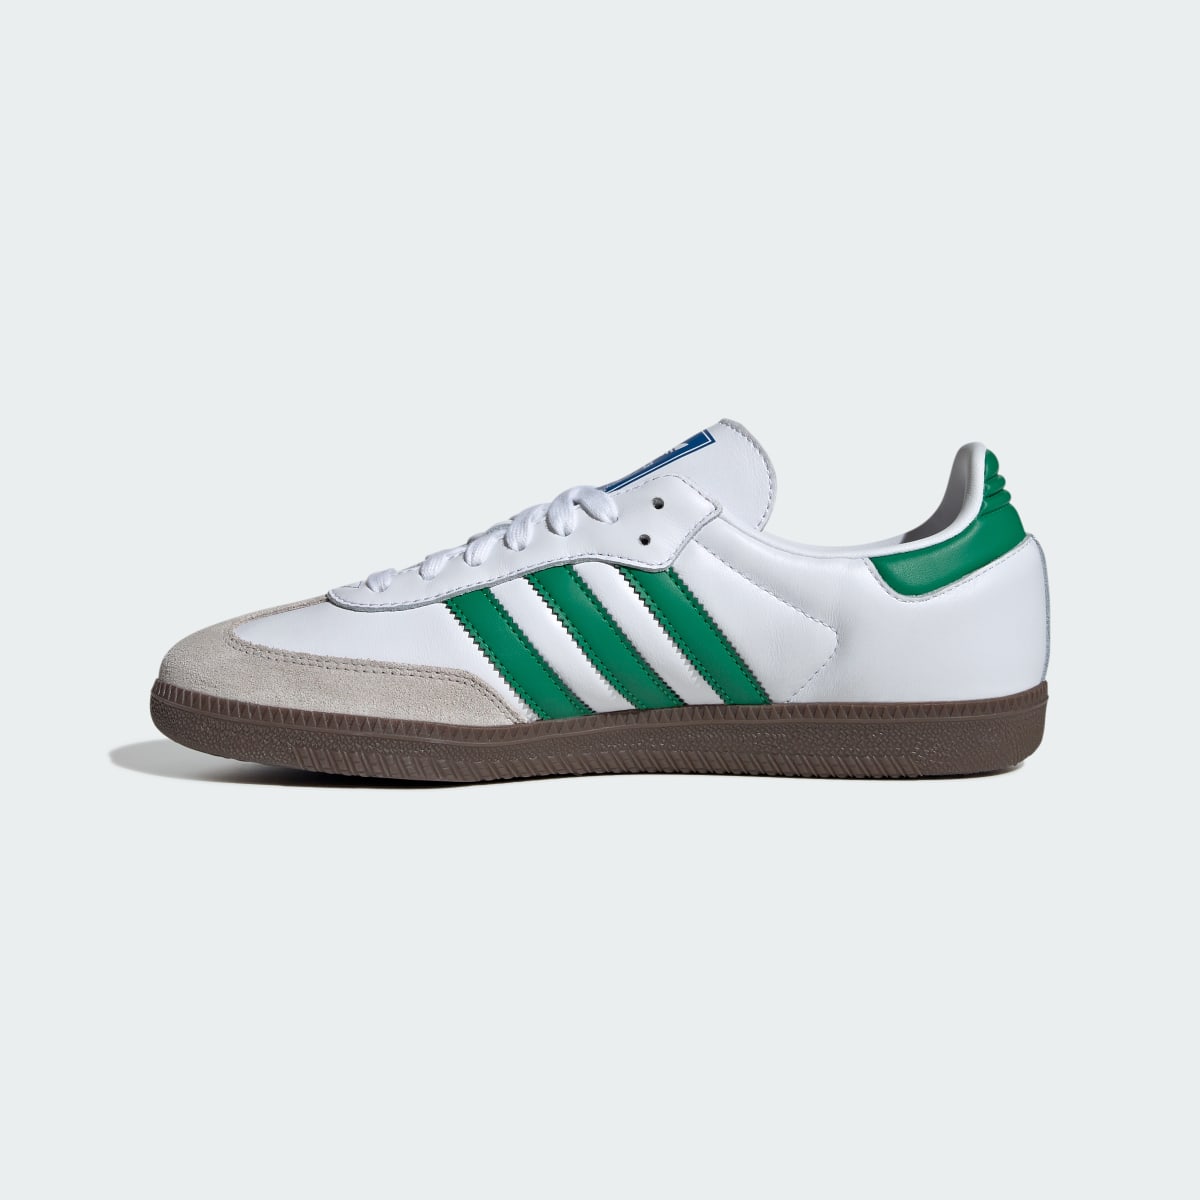 Adidas Samba OG Ayakkabı. 7